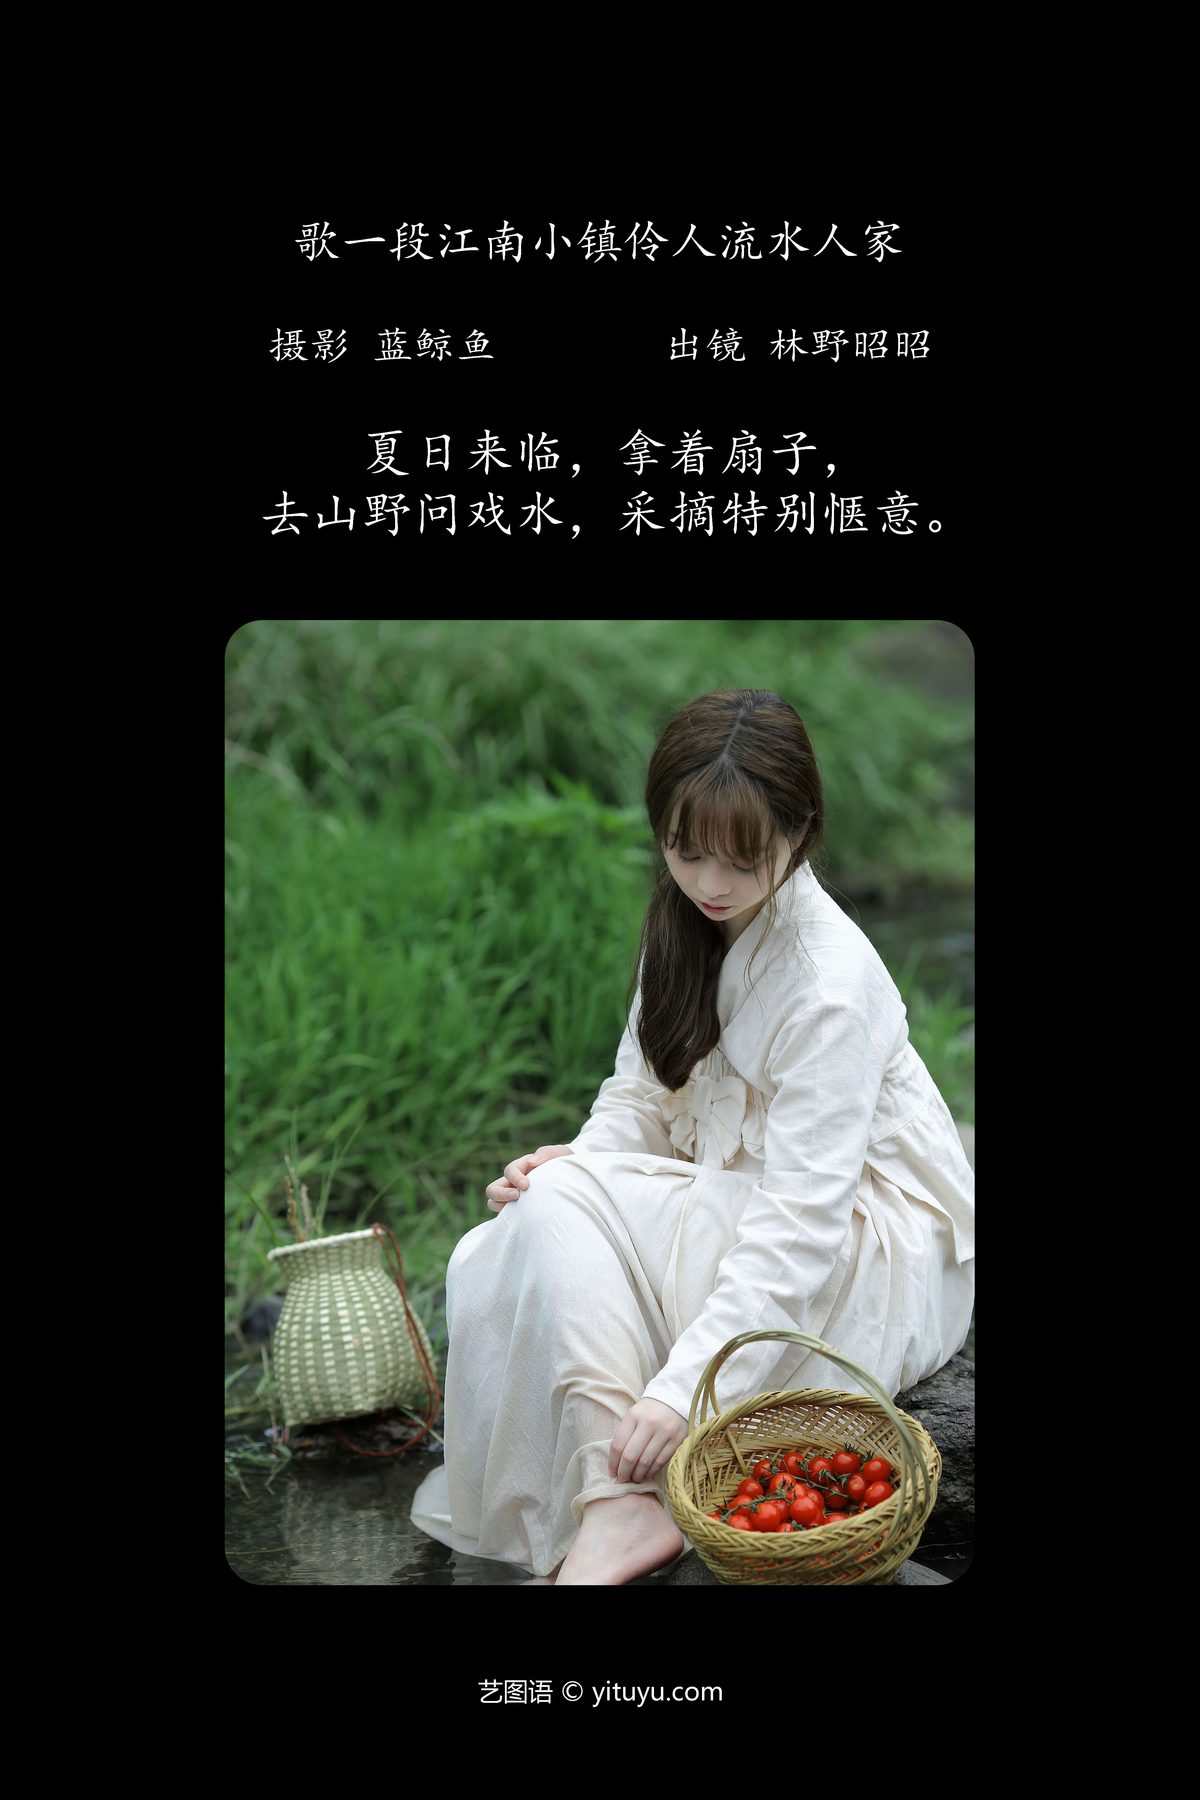 YiTuYu艺图语 Vol 4551 Lin Ye Zhao Zhao 0002 8514558179.jpg